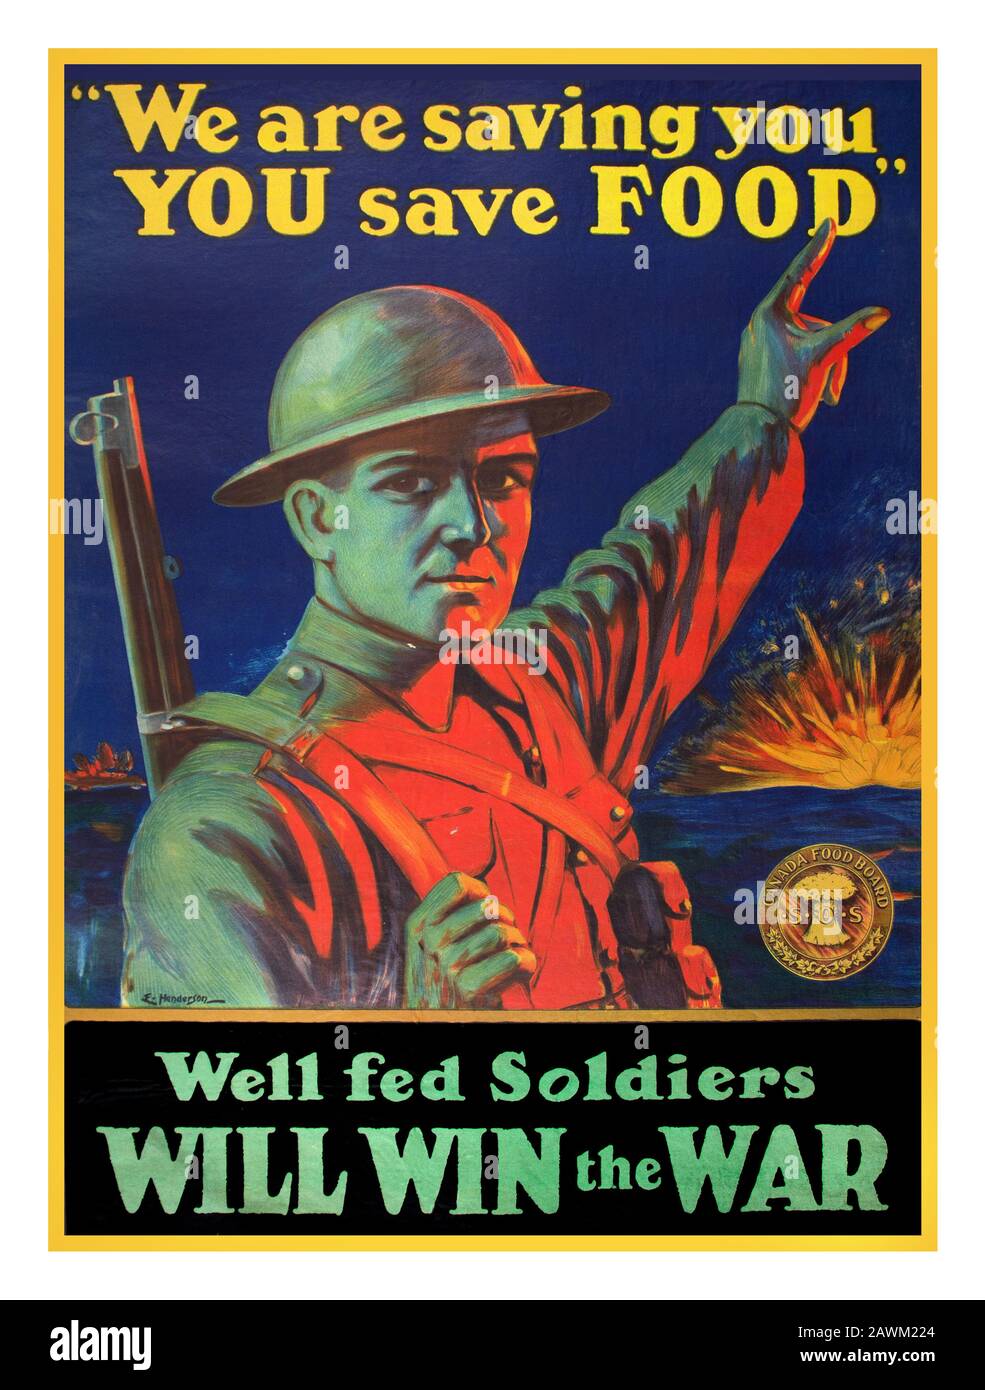 Vintage 1914-1918 Rationnement alimentaire affiche de propagande de la première Guerre mondiale américaine concernant le rationnement, "Nous vous saurons, VOUS SAUVEREZ DE LA NOURRITURE" "les soldats Bien nourris GAGNERONT la GUERRE Banque D'Images